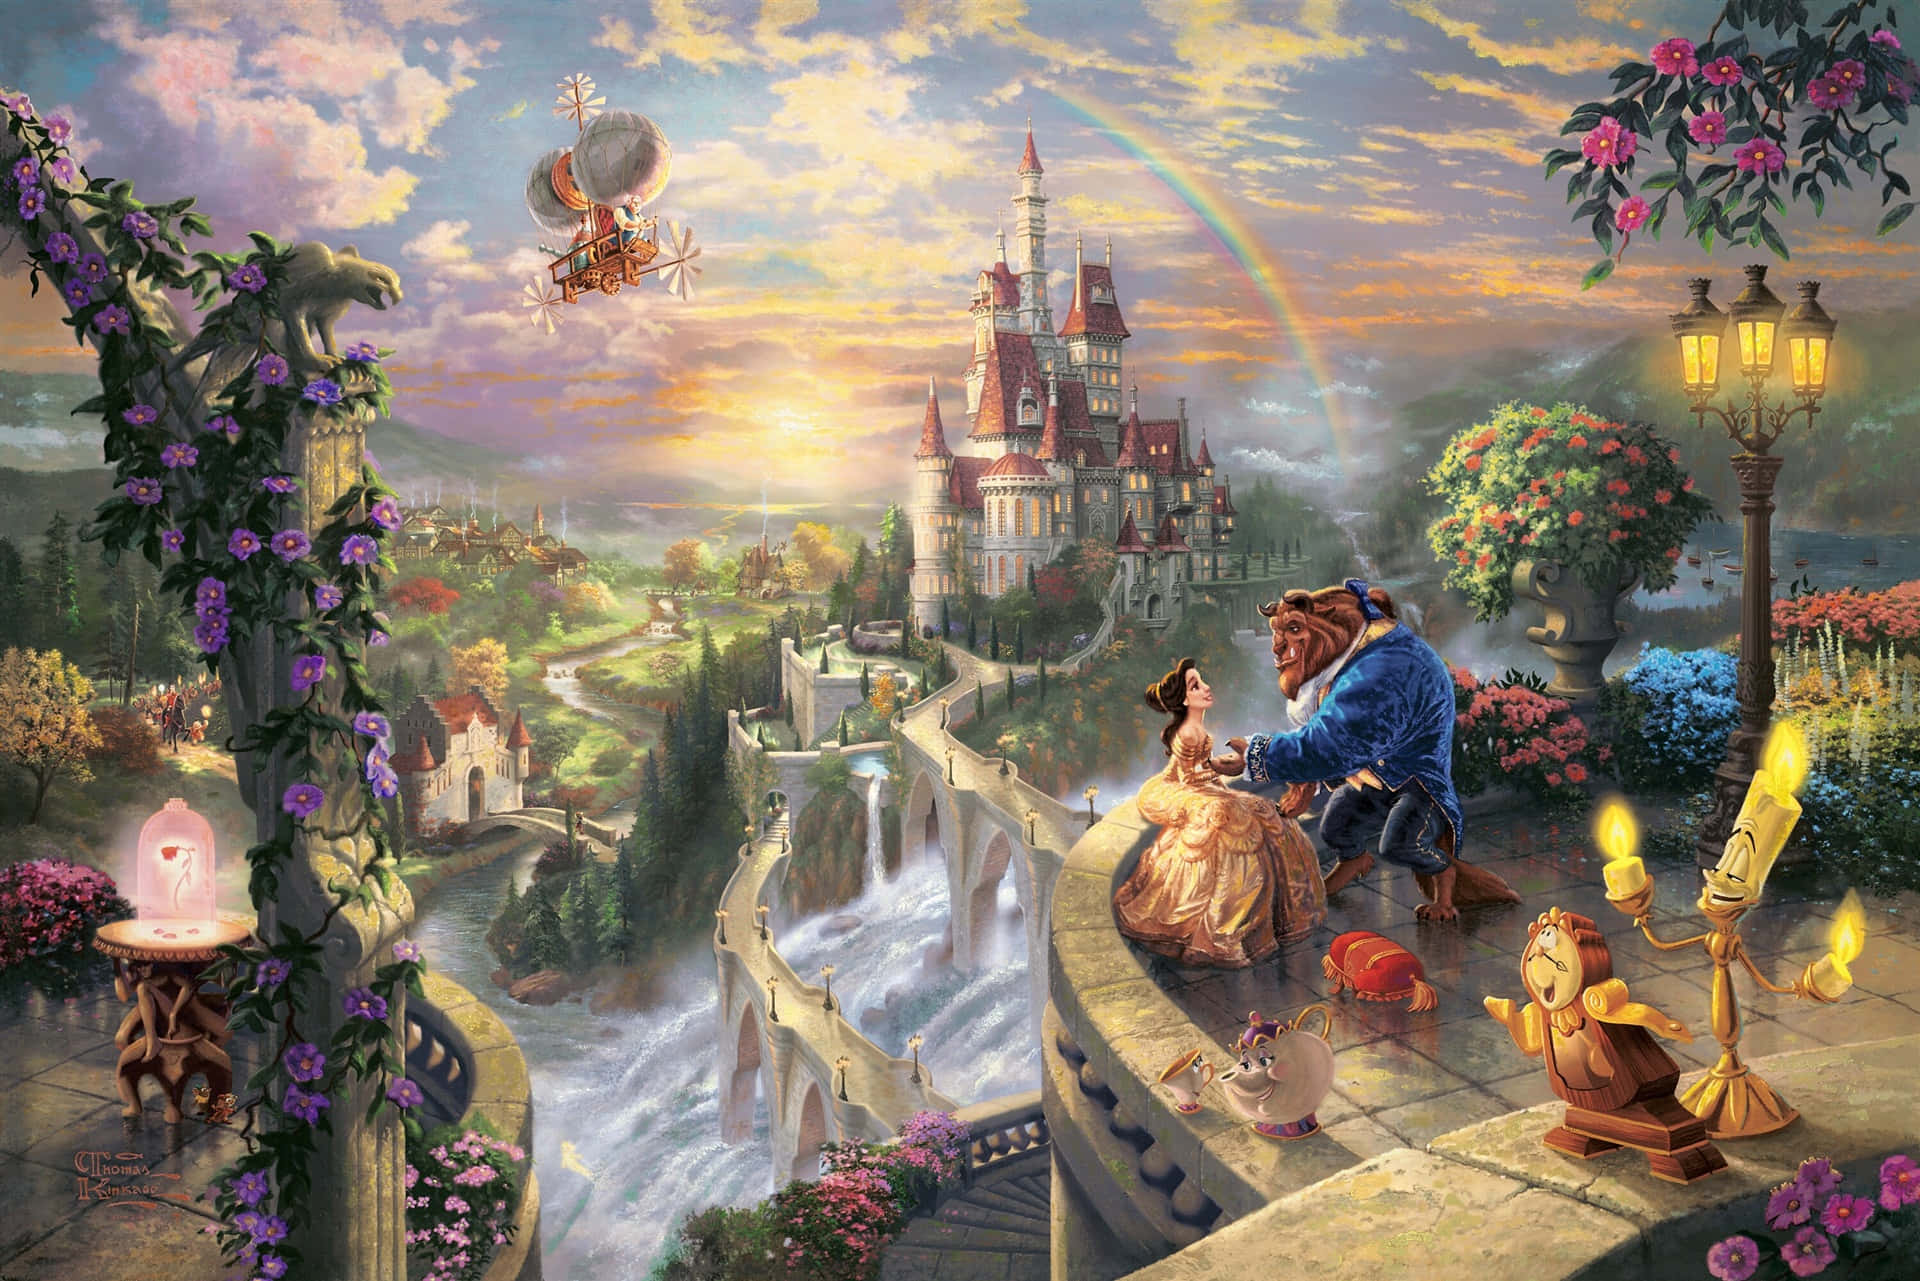 Oplevtryllebindende Hd-billeder Af Disney World. Wallpaper